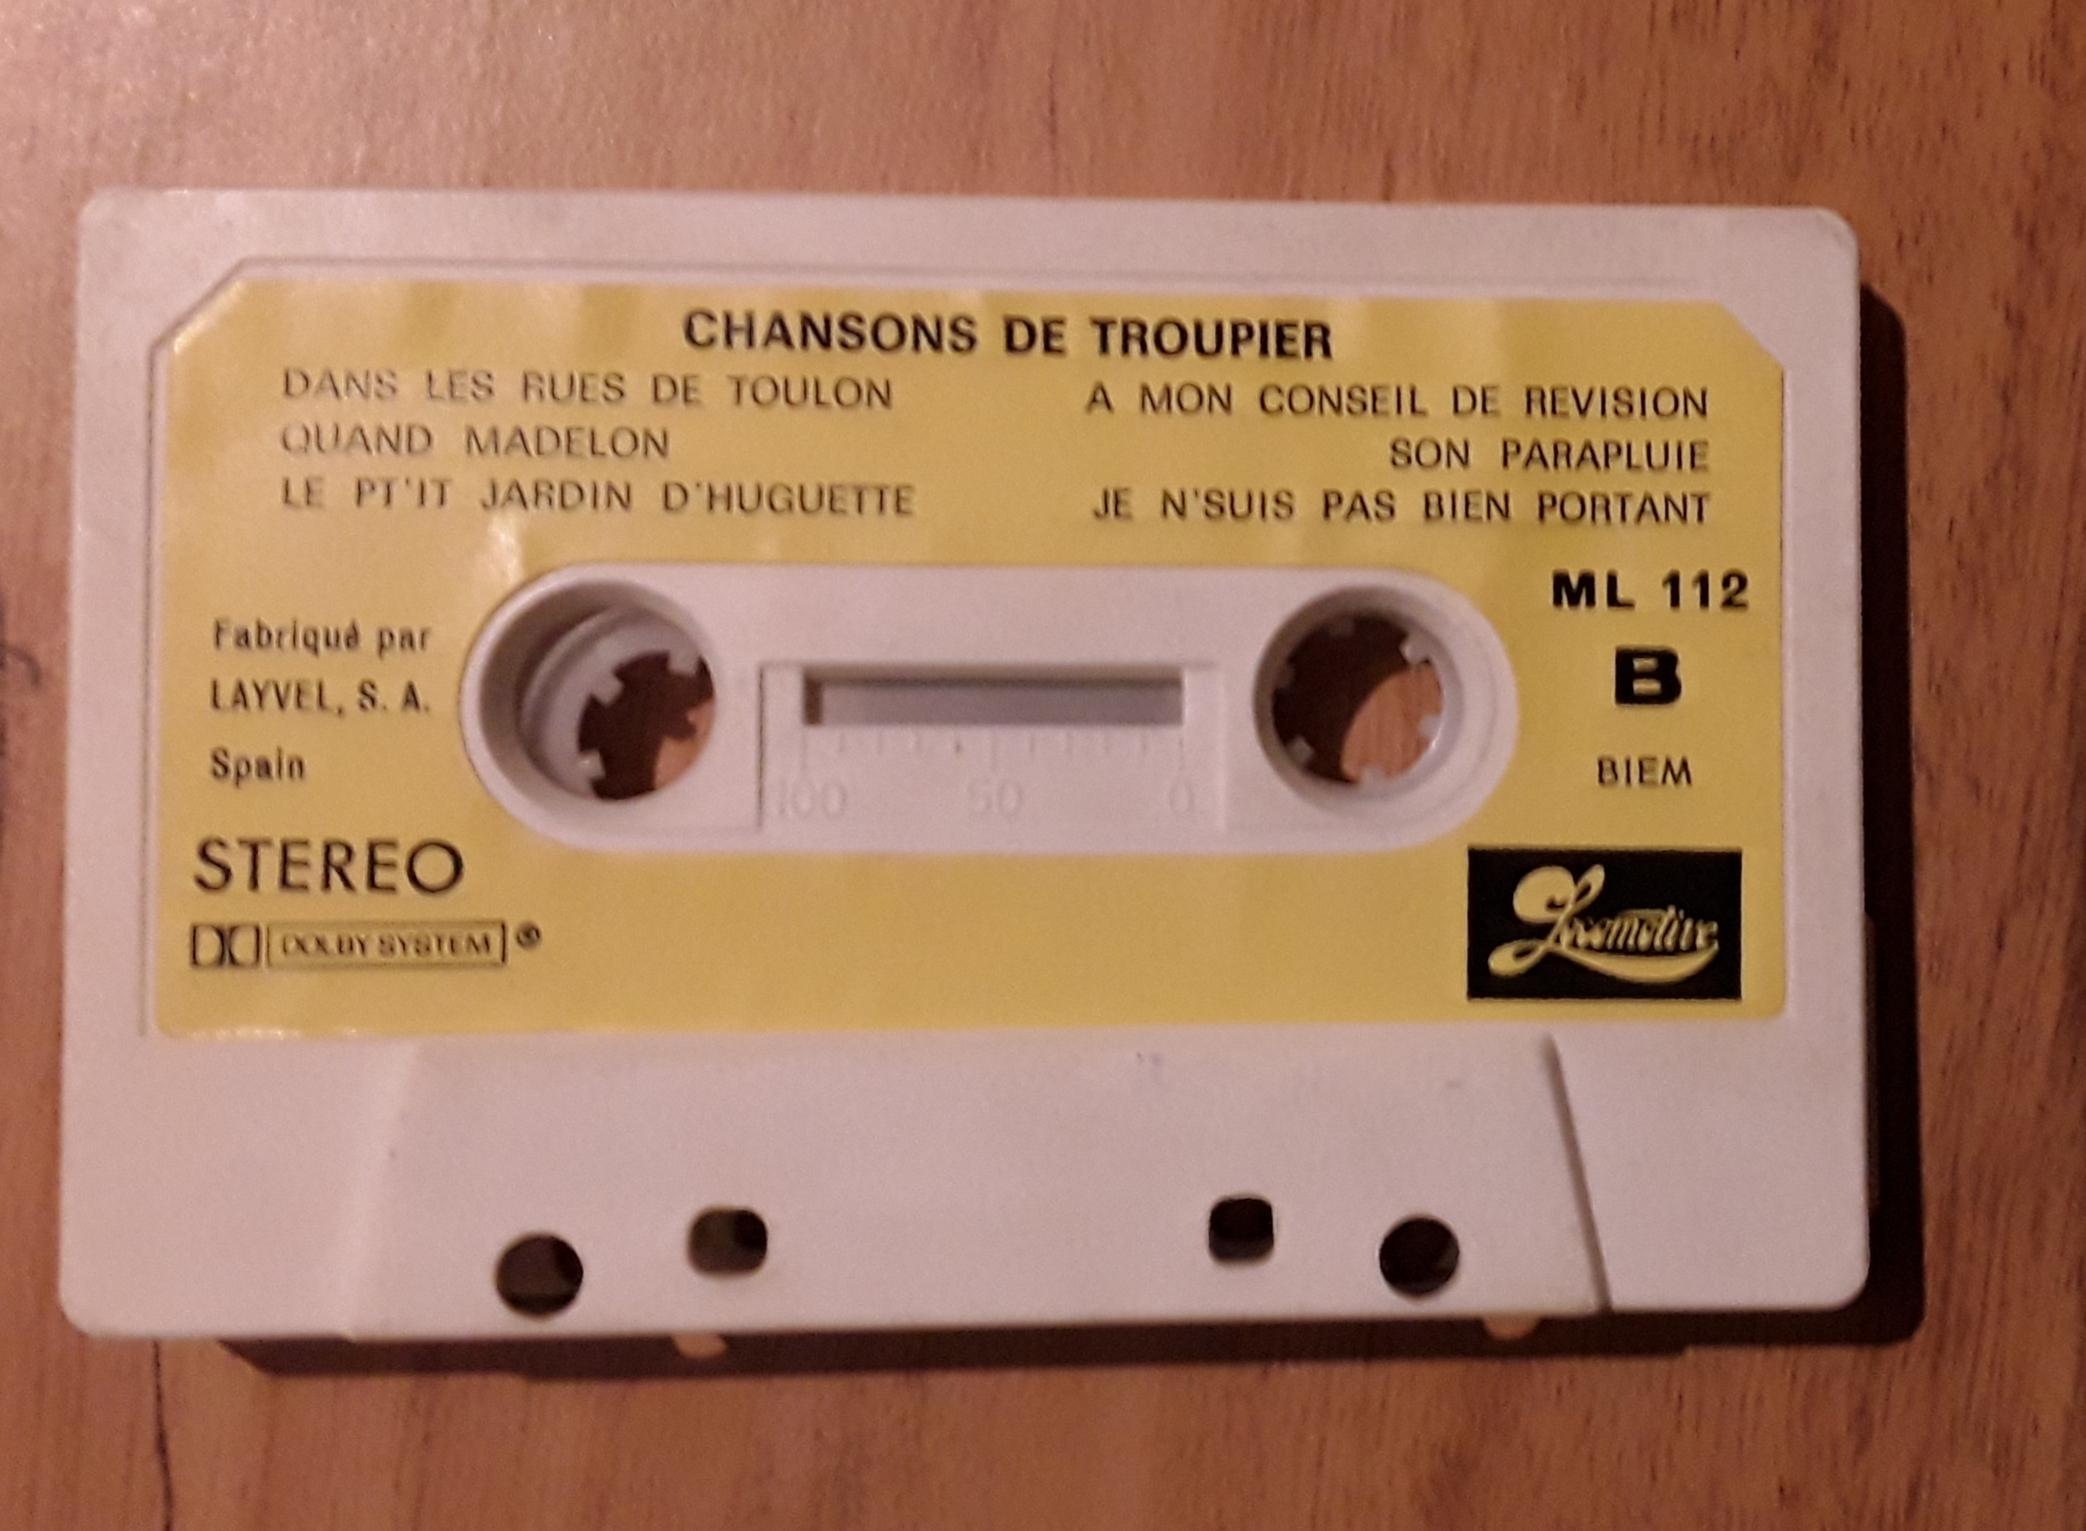 troc de troc cassette audio : chansons de troupier image 1